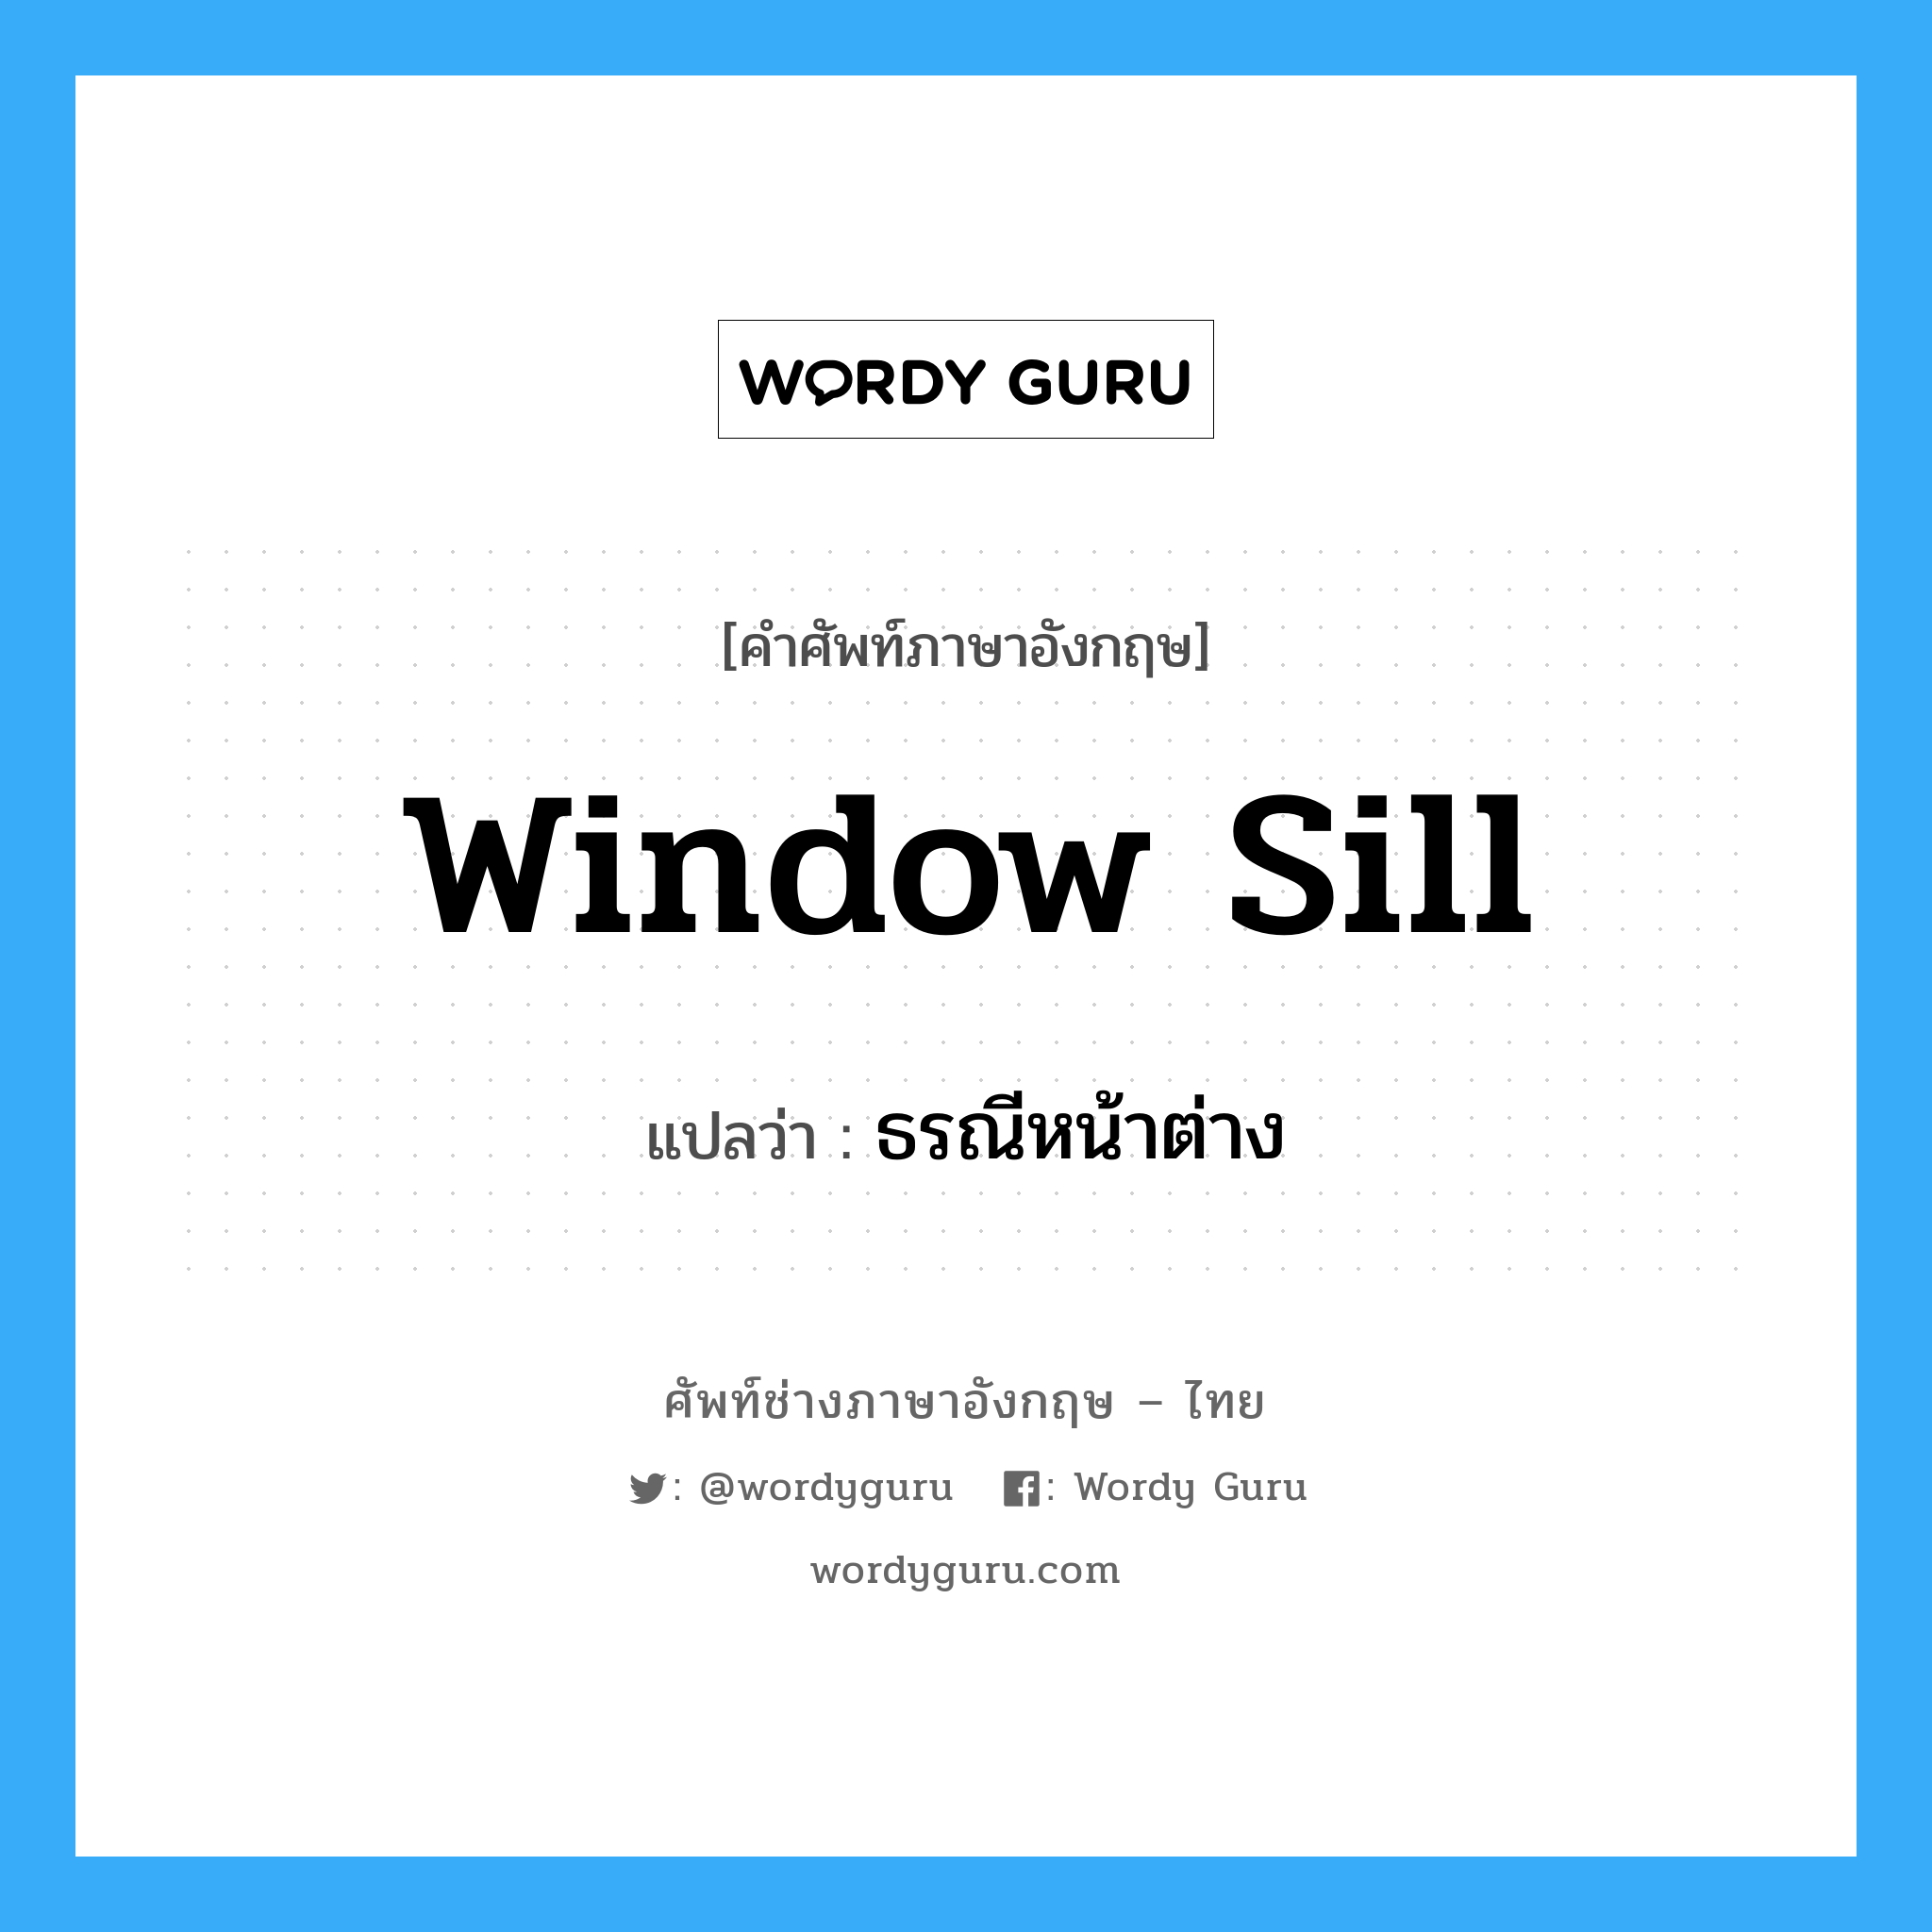 ธรณีหน้าต่าง ภาษาอังกฤษ?, คำศัพท์ช่างภาษาอังกฤษ - ไทย ธรณีหน้าต่าง คำศัพท์ภาษาอังกฤษ ธรณีหน้าต่าง แปลว่า window sill